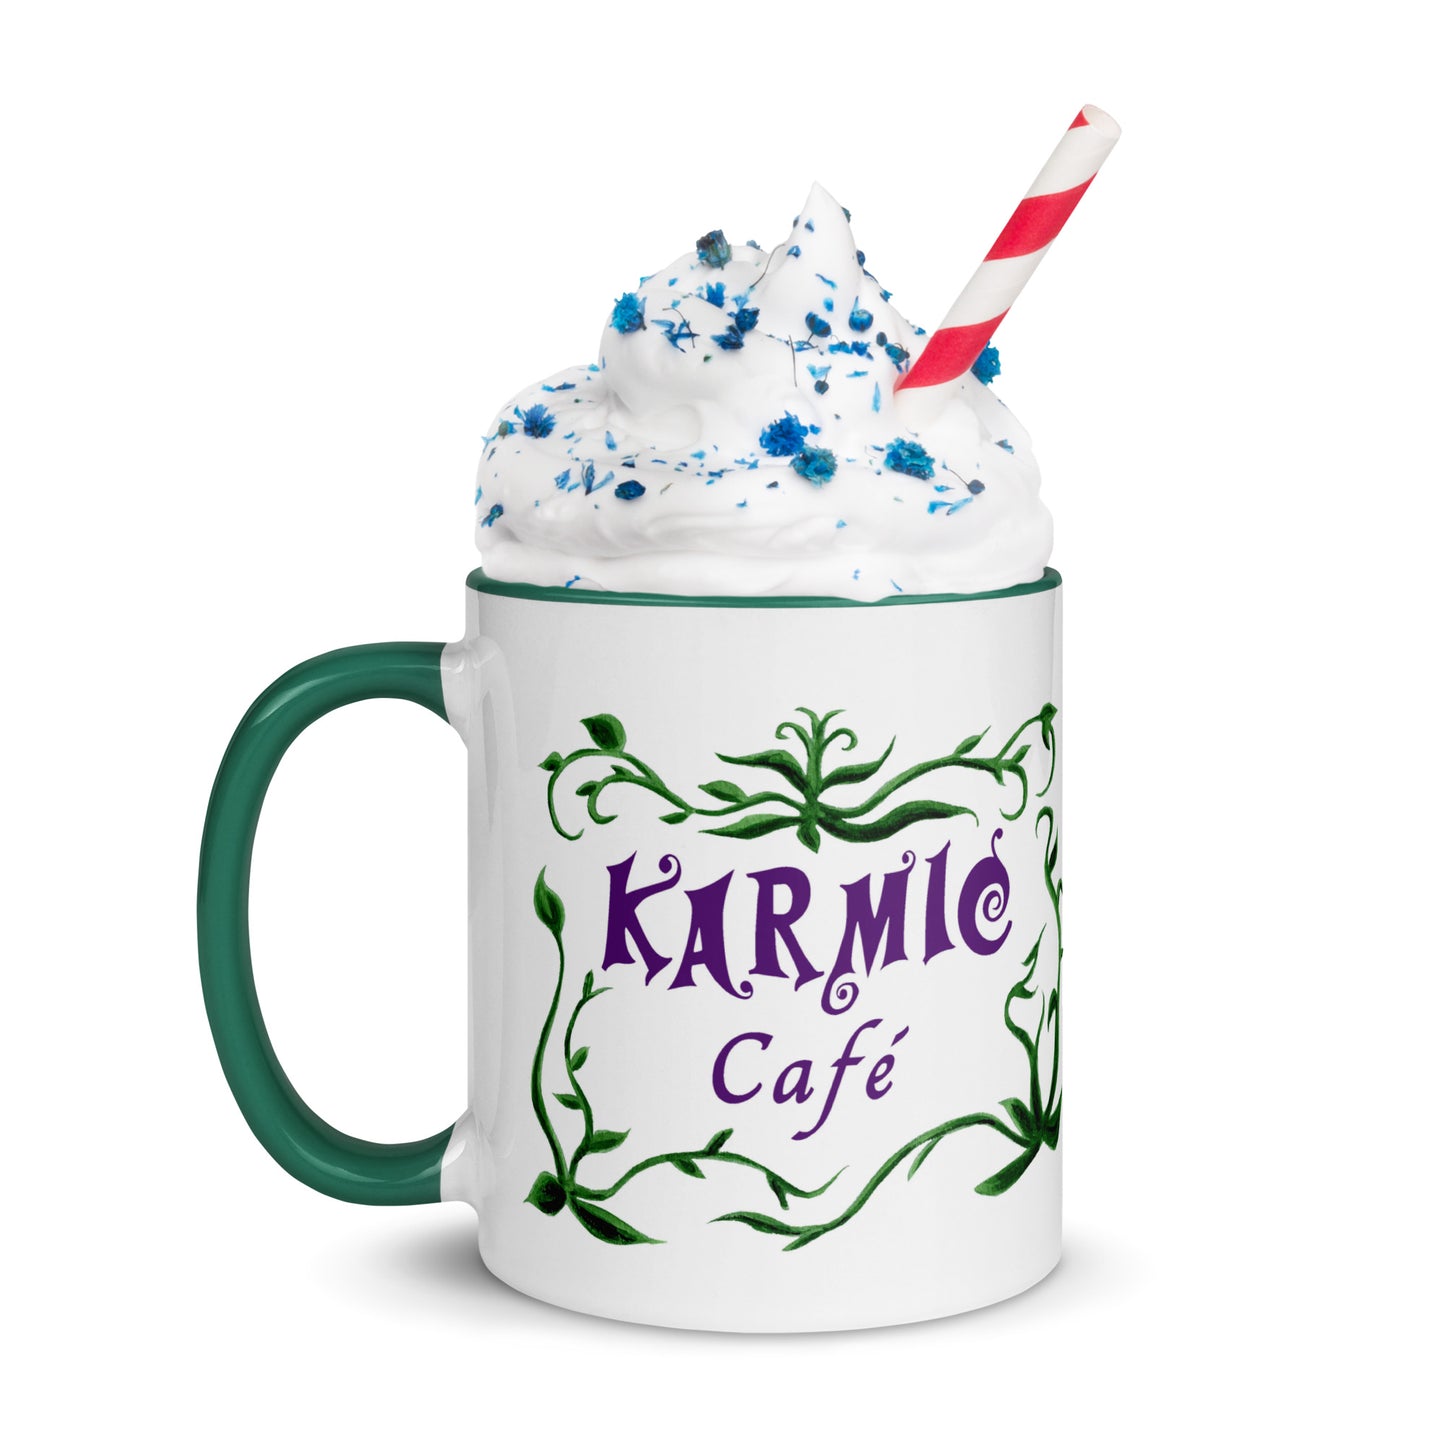 Fat Cat - Karmic Cafe Mug - color inside